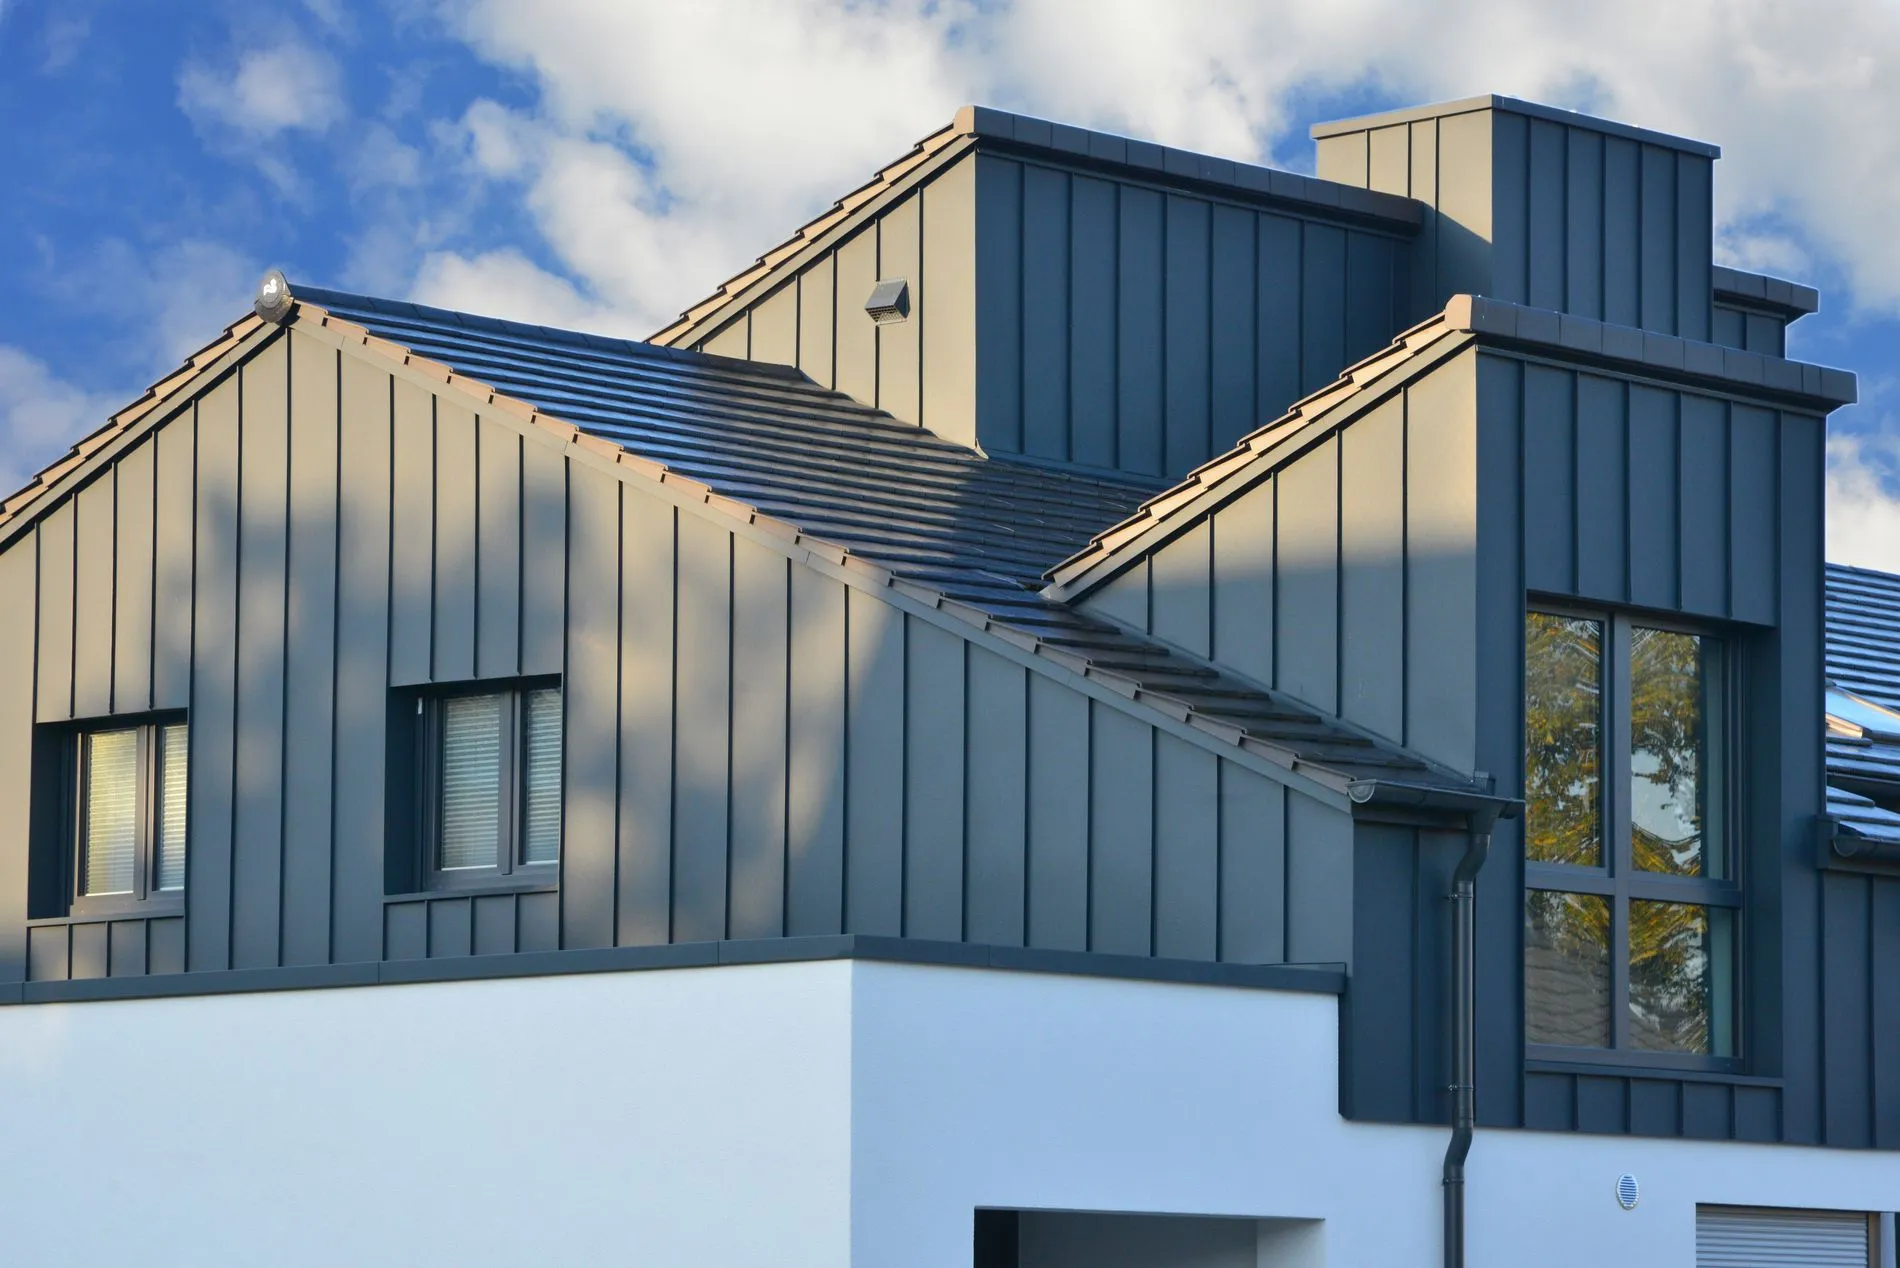 Metall-Fassadenverblendung des Dachgeschosses.jpeg